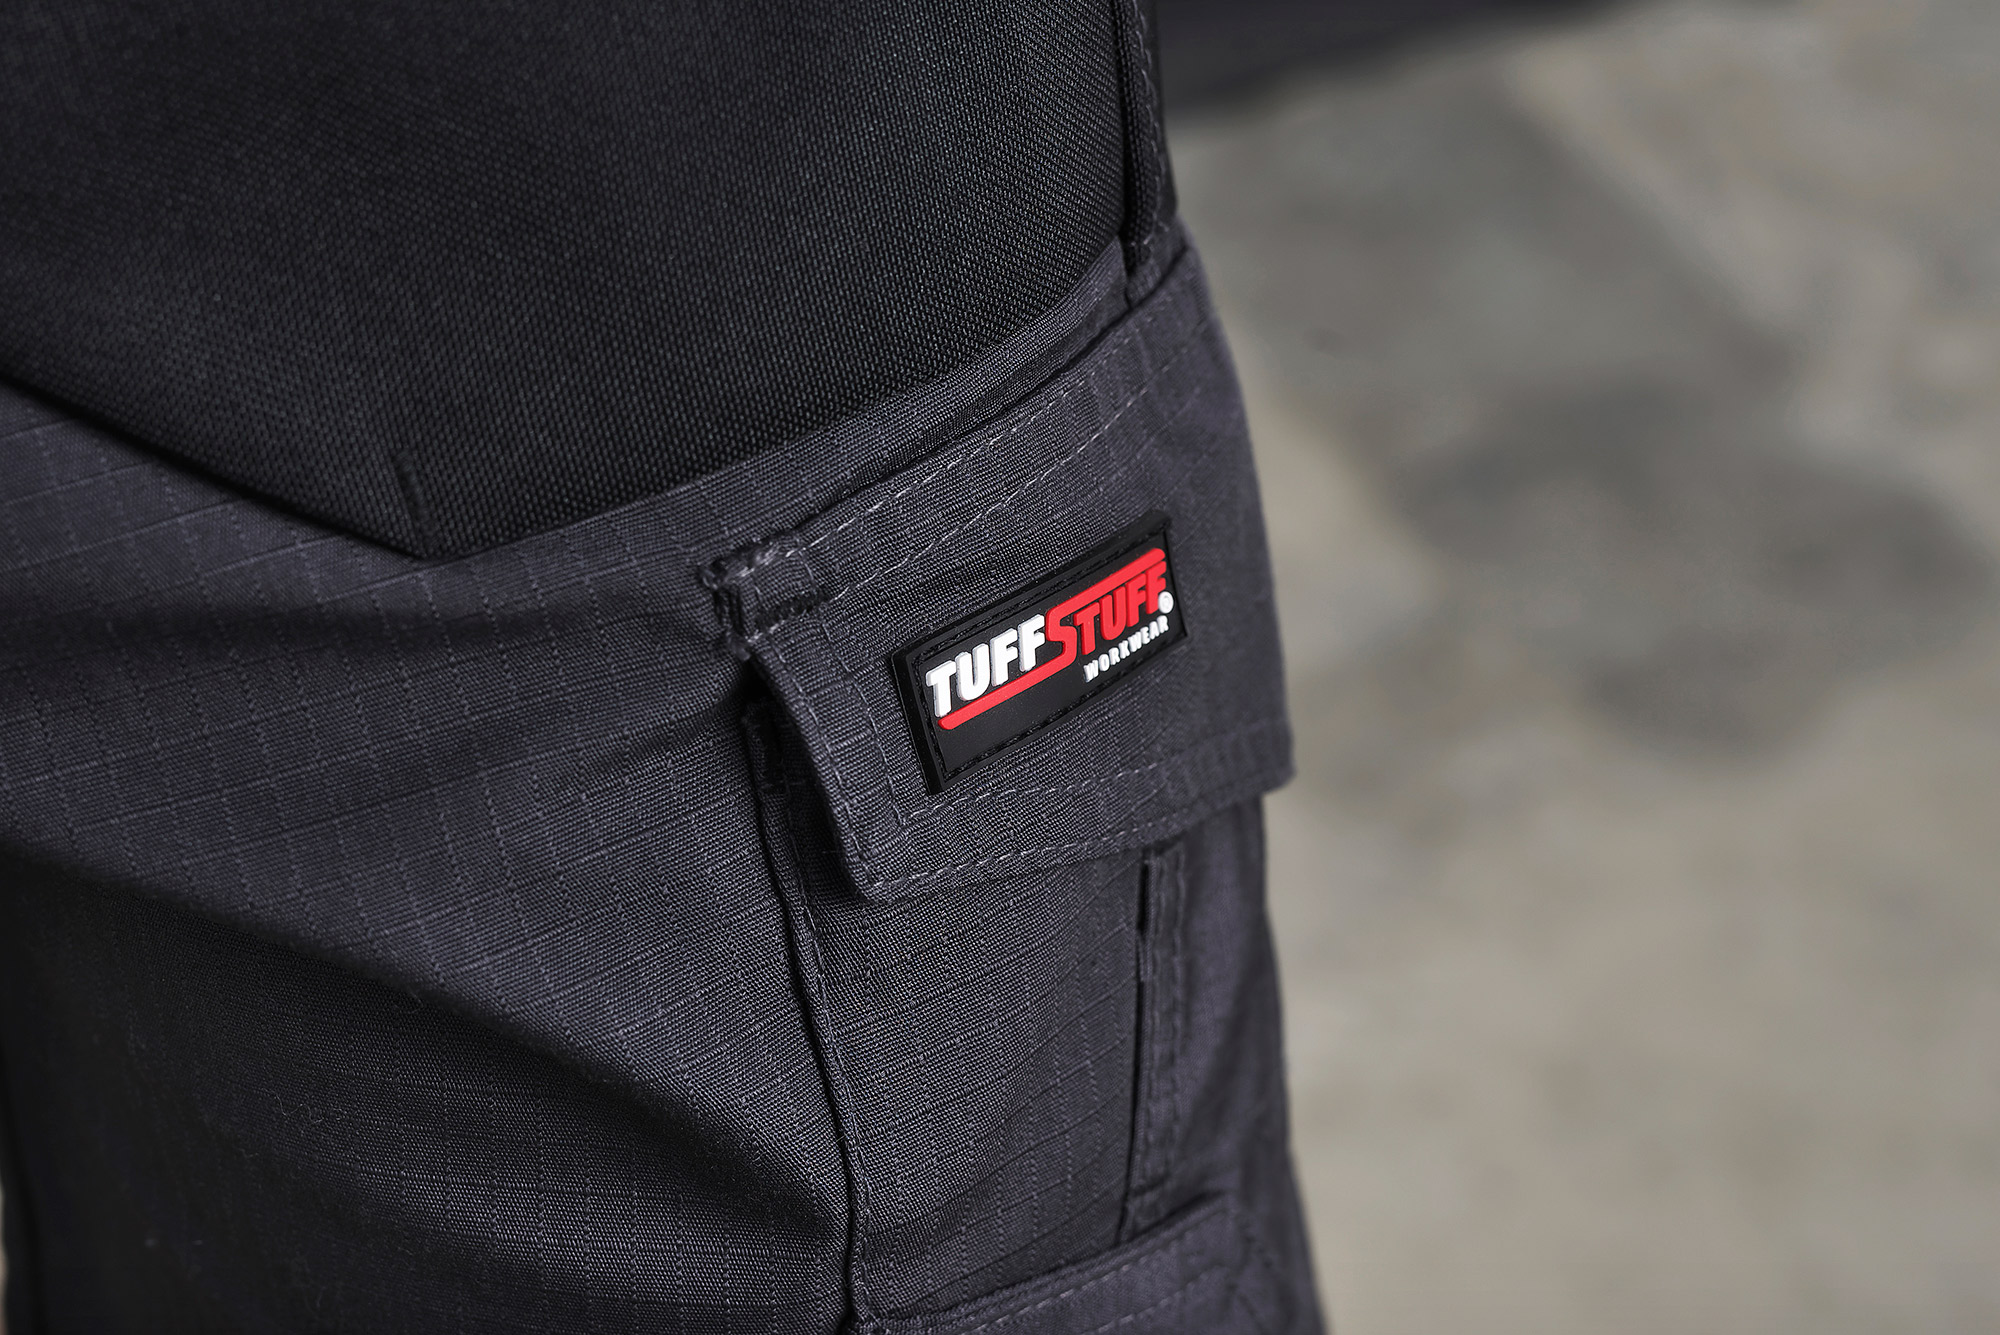 Tuff stuff Full Stretch Proflex 715 Slim Fit Work Trouser With Knee Pad Pockets 